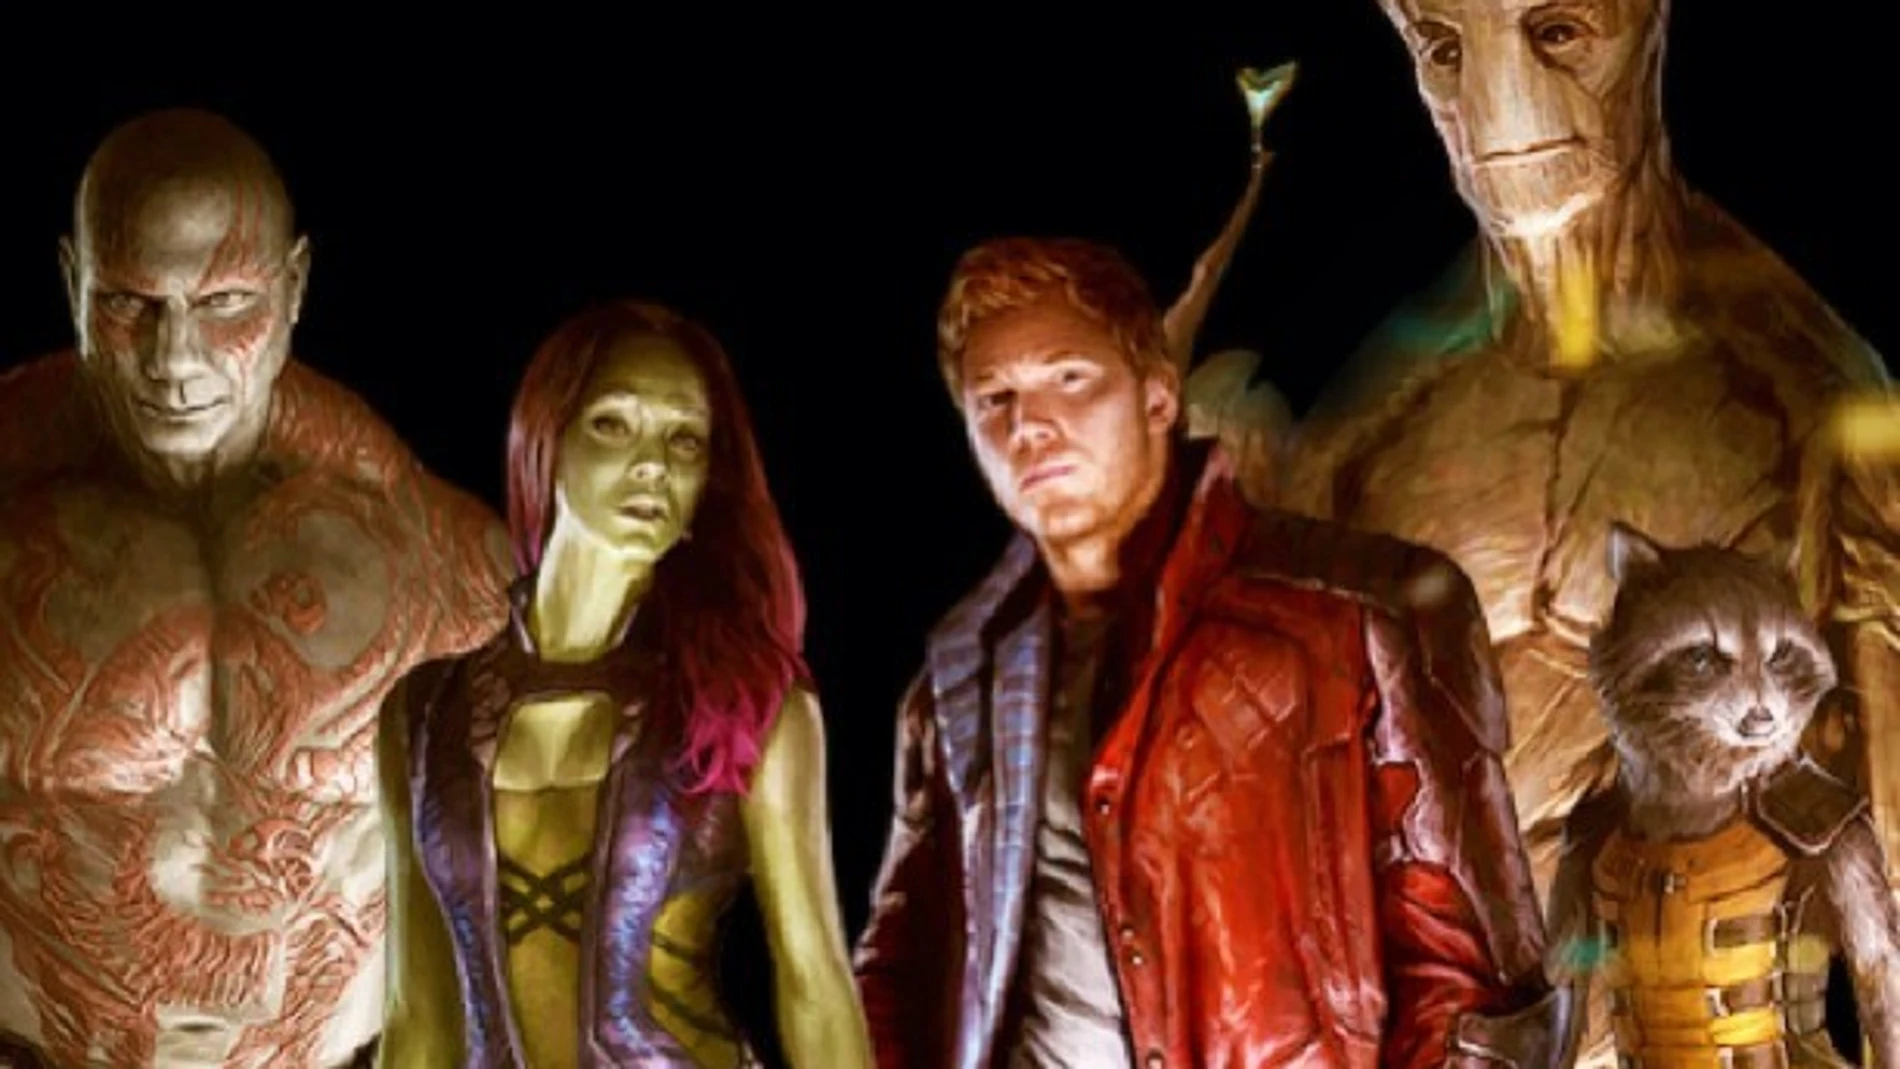 Imagen de los personajes de "Guardianes de la Galaxia", un ade las próximas películas de Marvel